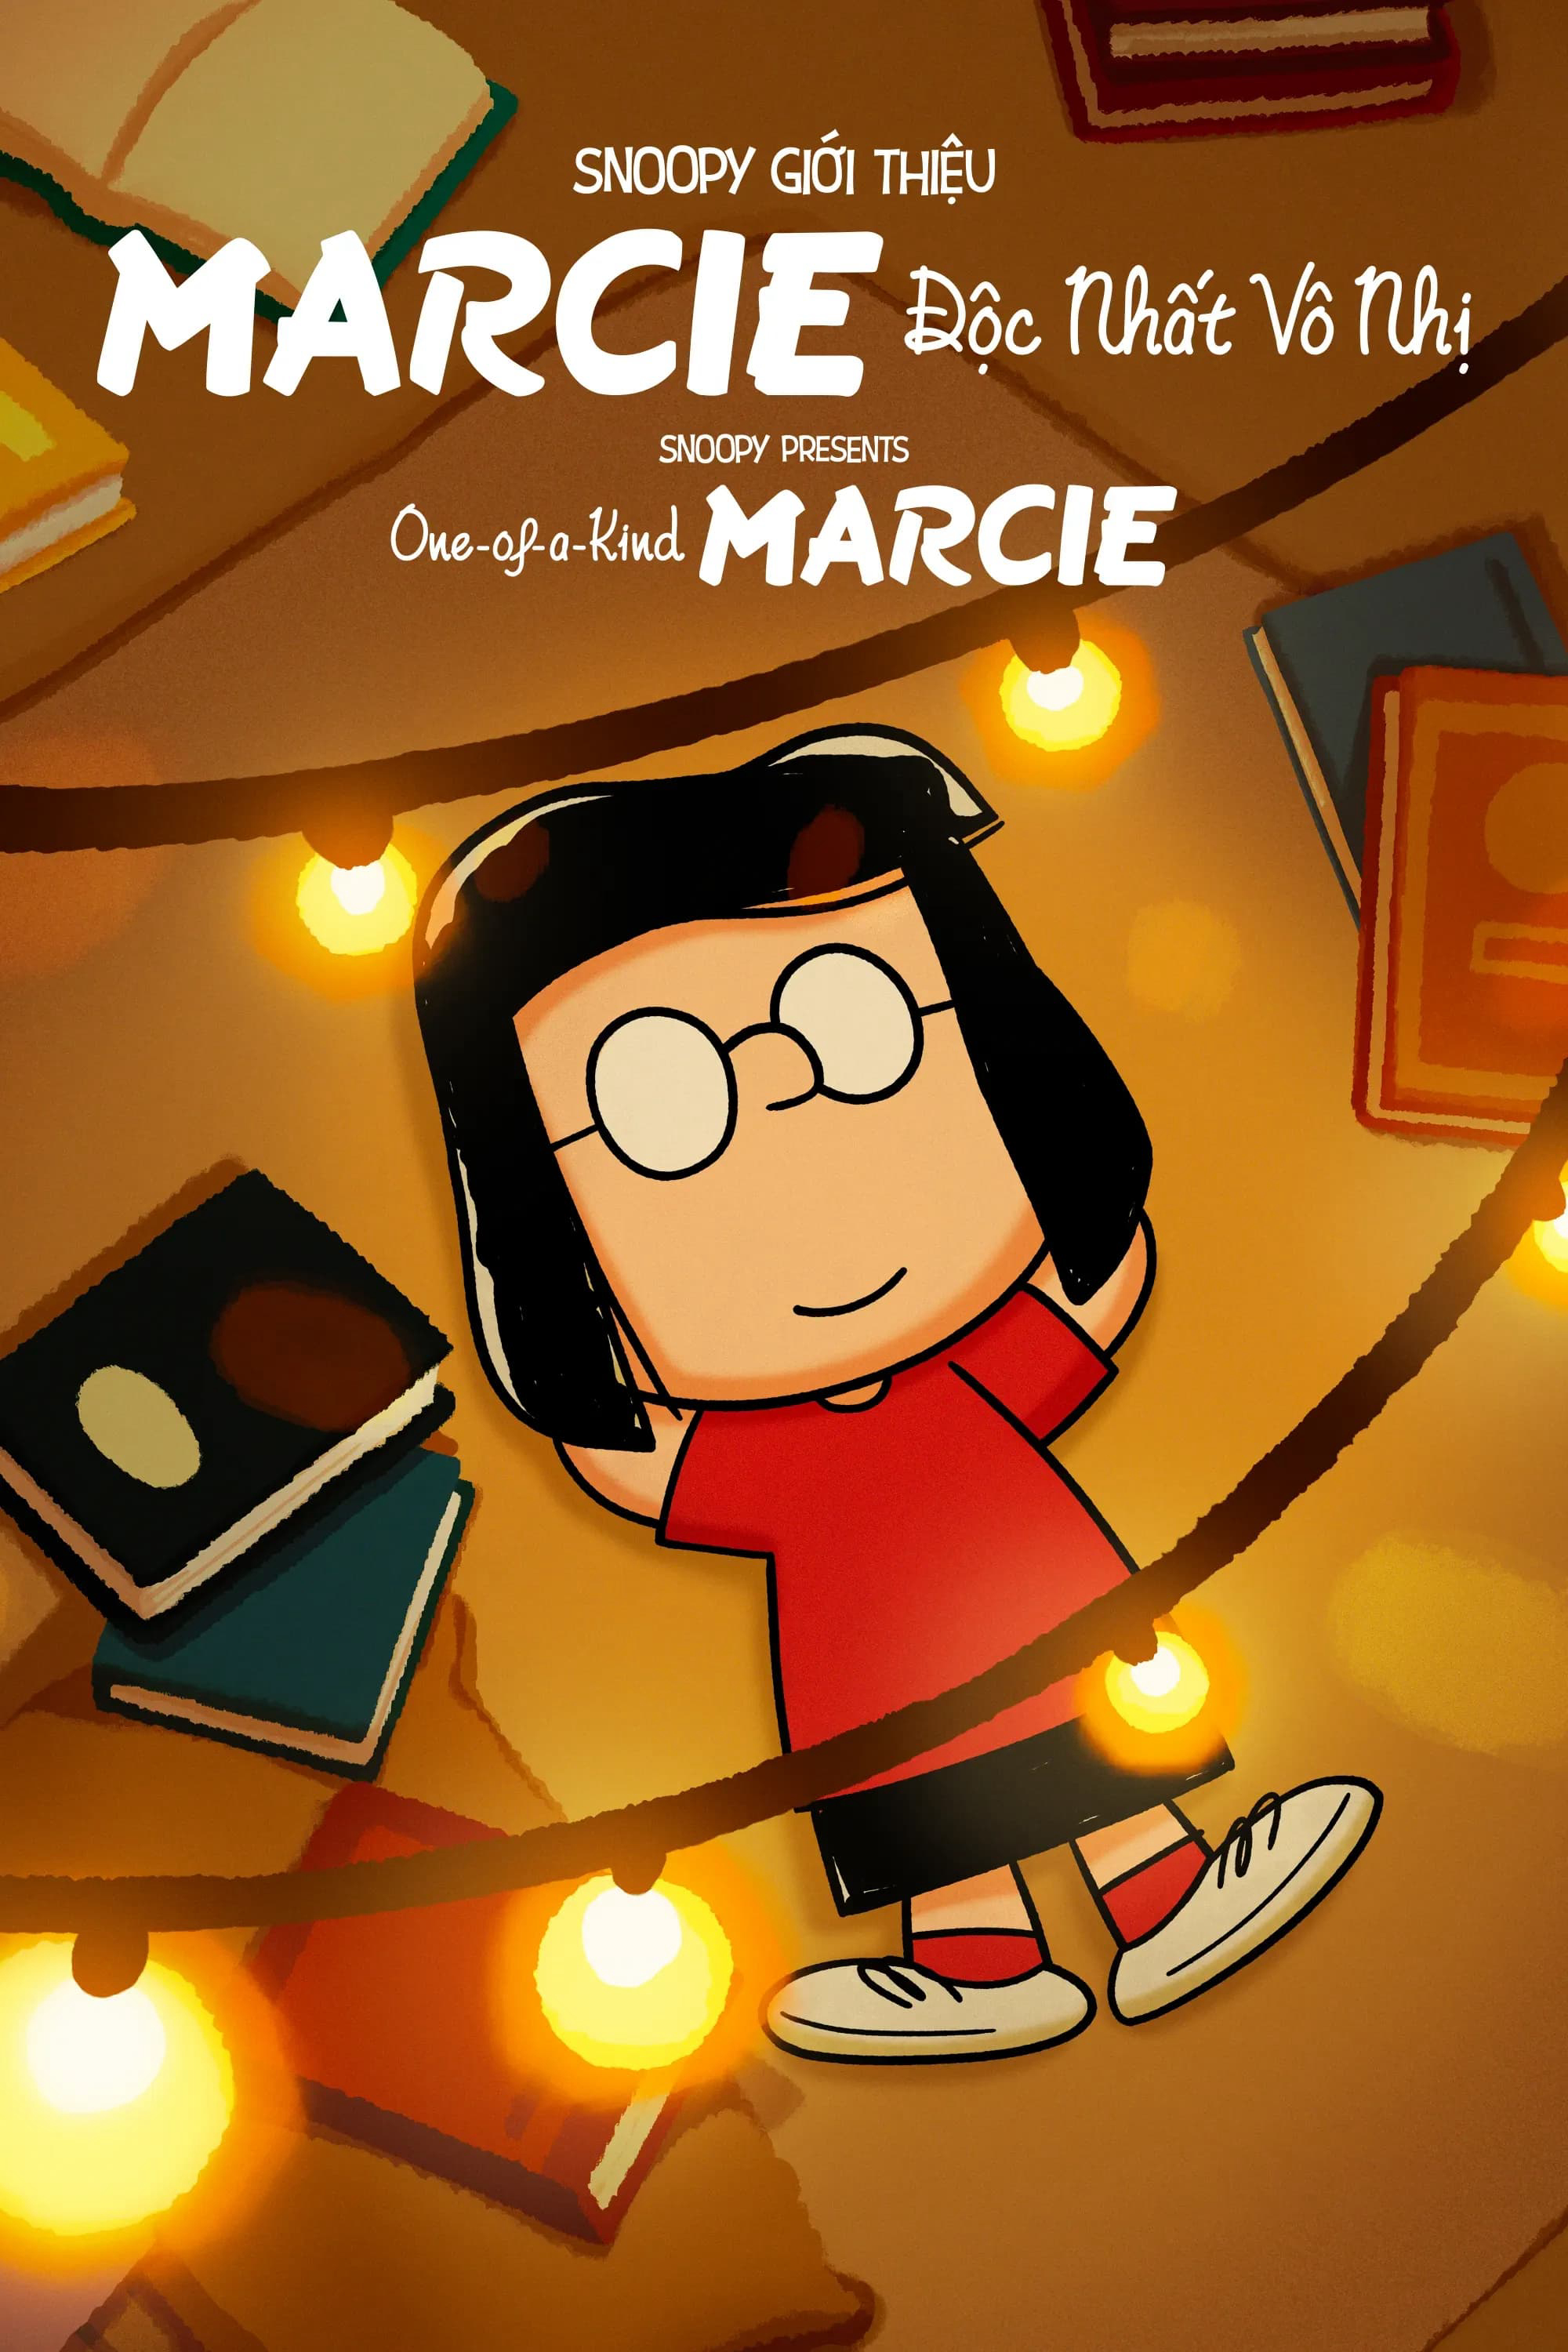 Poster Phim Snoopy Giới Thiệu: Marcie Độc Nhất Vô Nhị (Snoopy Presents: One-of-a-Kind Marcie)